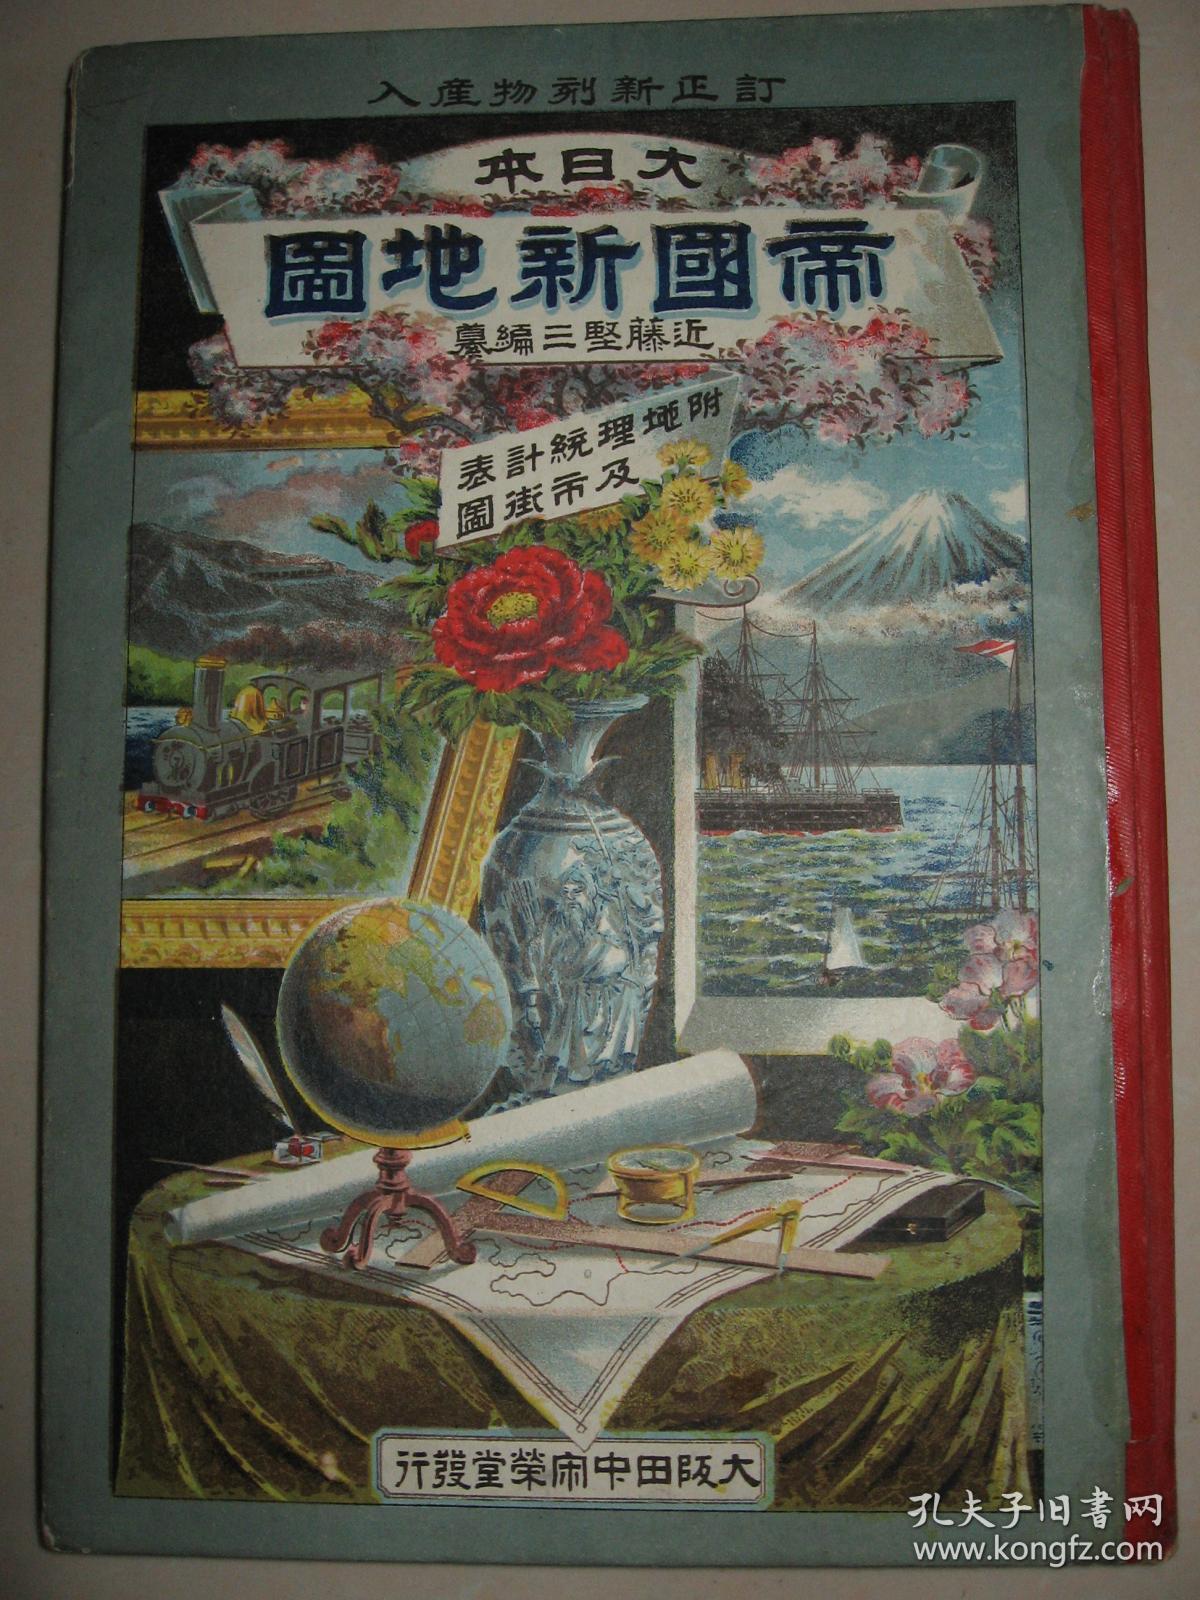 清末老地图 1900年《大日本帝国新地图》16开精装 日本著名城市市街图 台湾